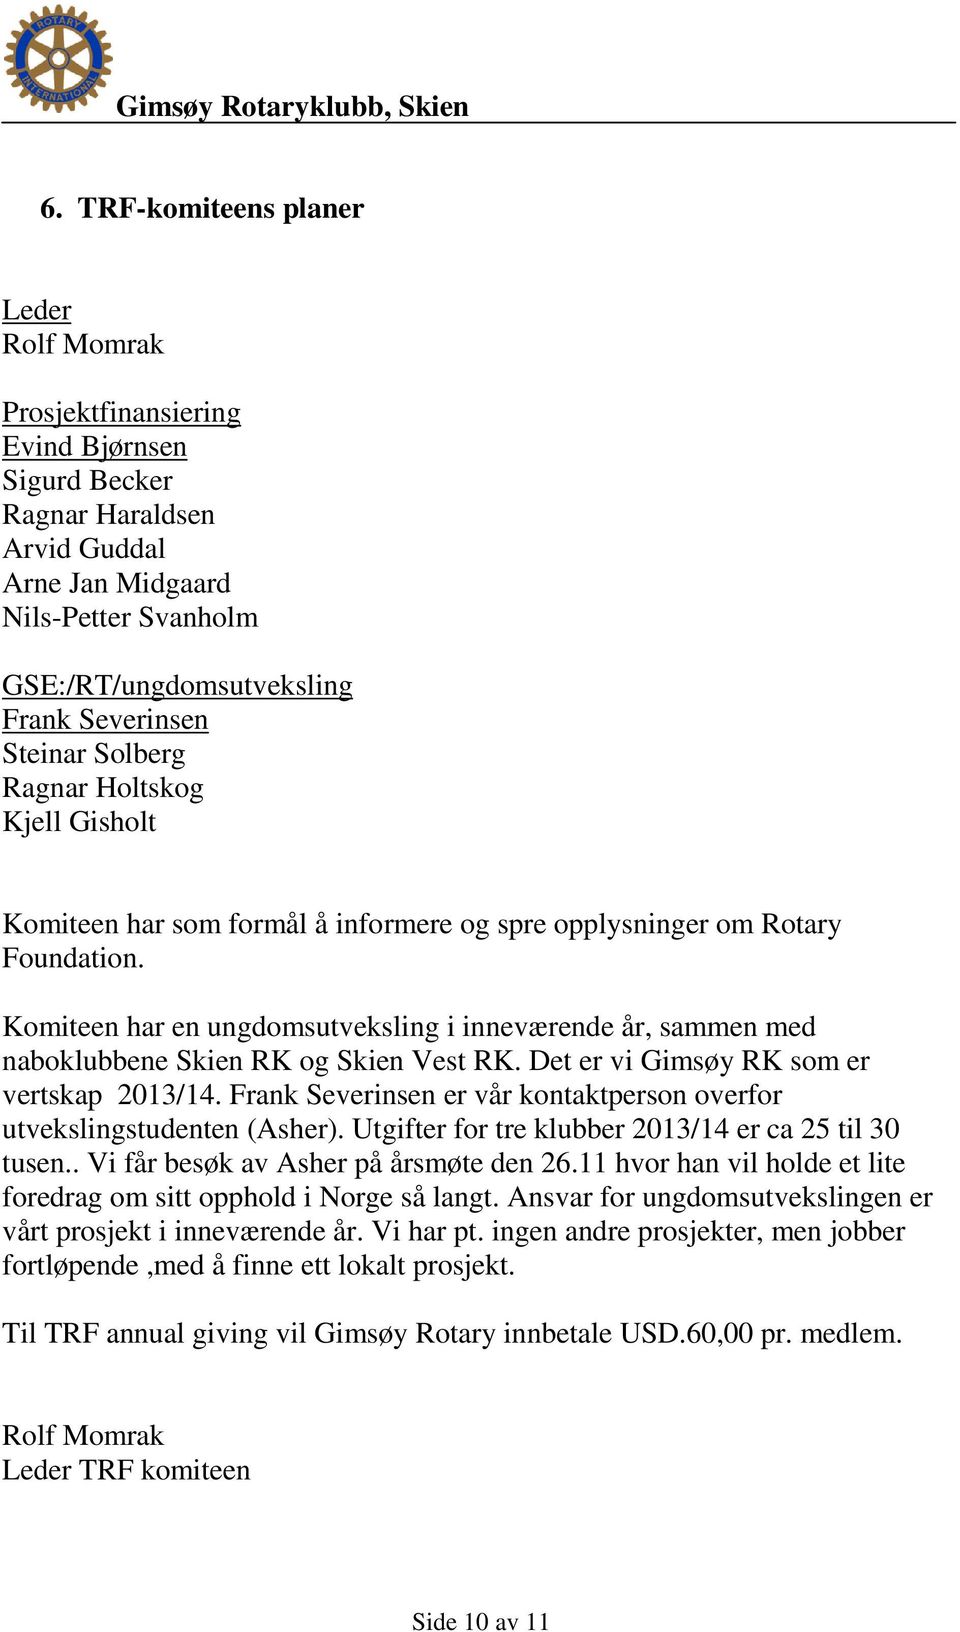 Komiteen har en ungdomsutveksling i inneværende år, sammen med naboklubbene Skien RK og Skien Vest RK. Det er vi Gimsøy RK som er vertskap 2013/14.